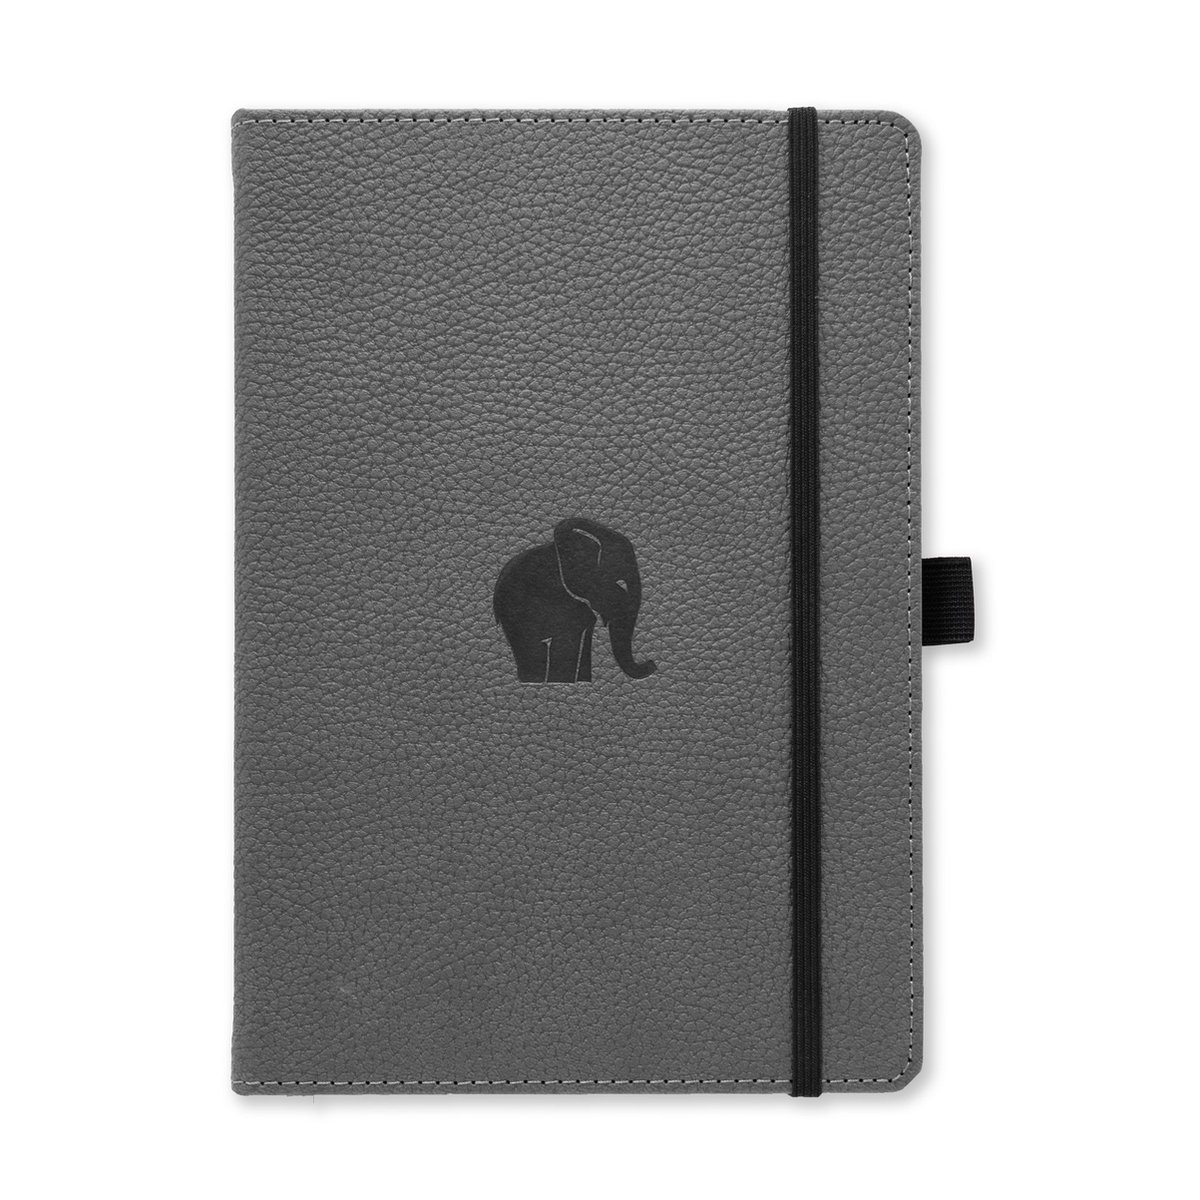 Dingbats* Wildlife A5 Notitieboek – Grey Elephant Stippen – Bullet Journal met 100 gsm Inktvrij Papier – Schetsboek met Harde Kaft, Elastische Sluiting en Bladwijzer